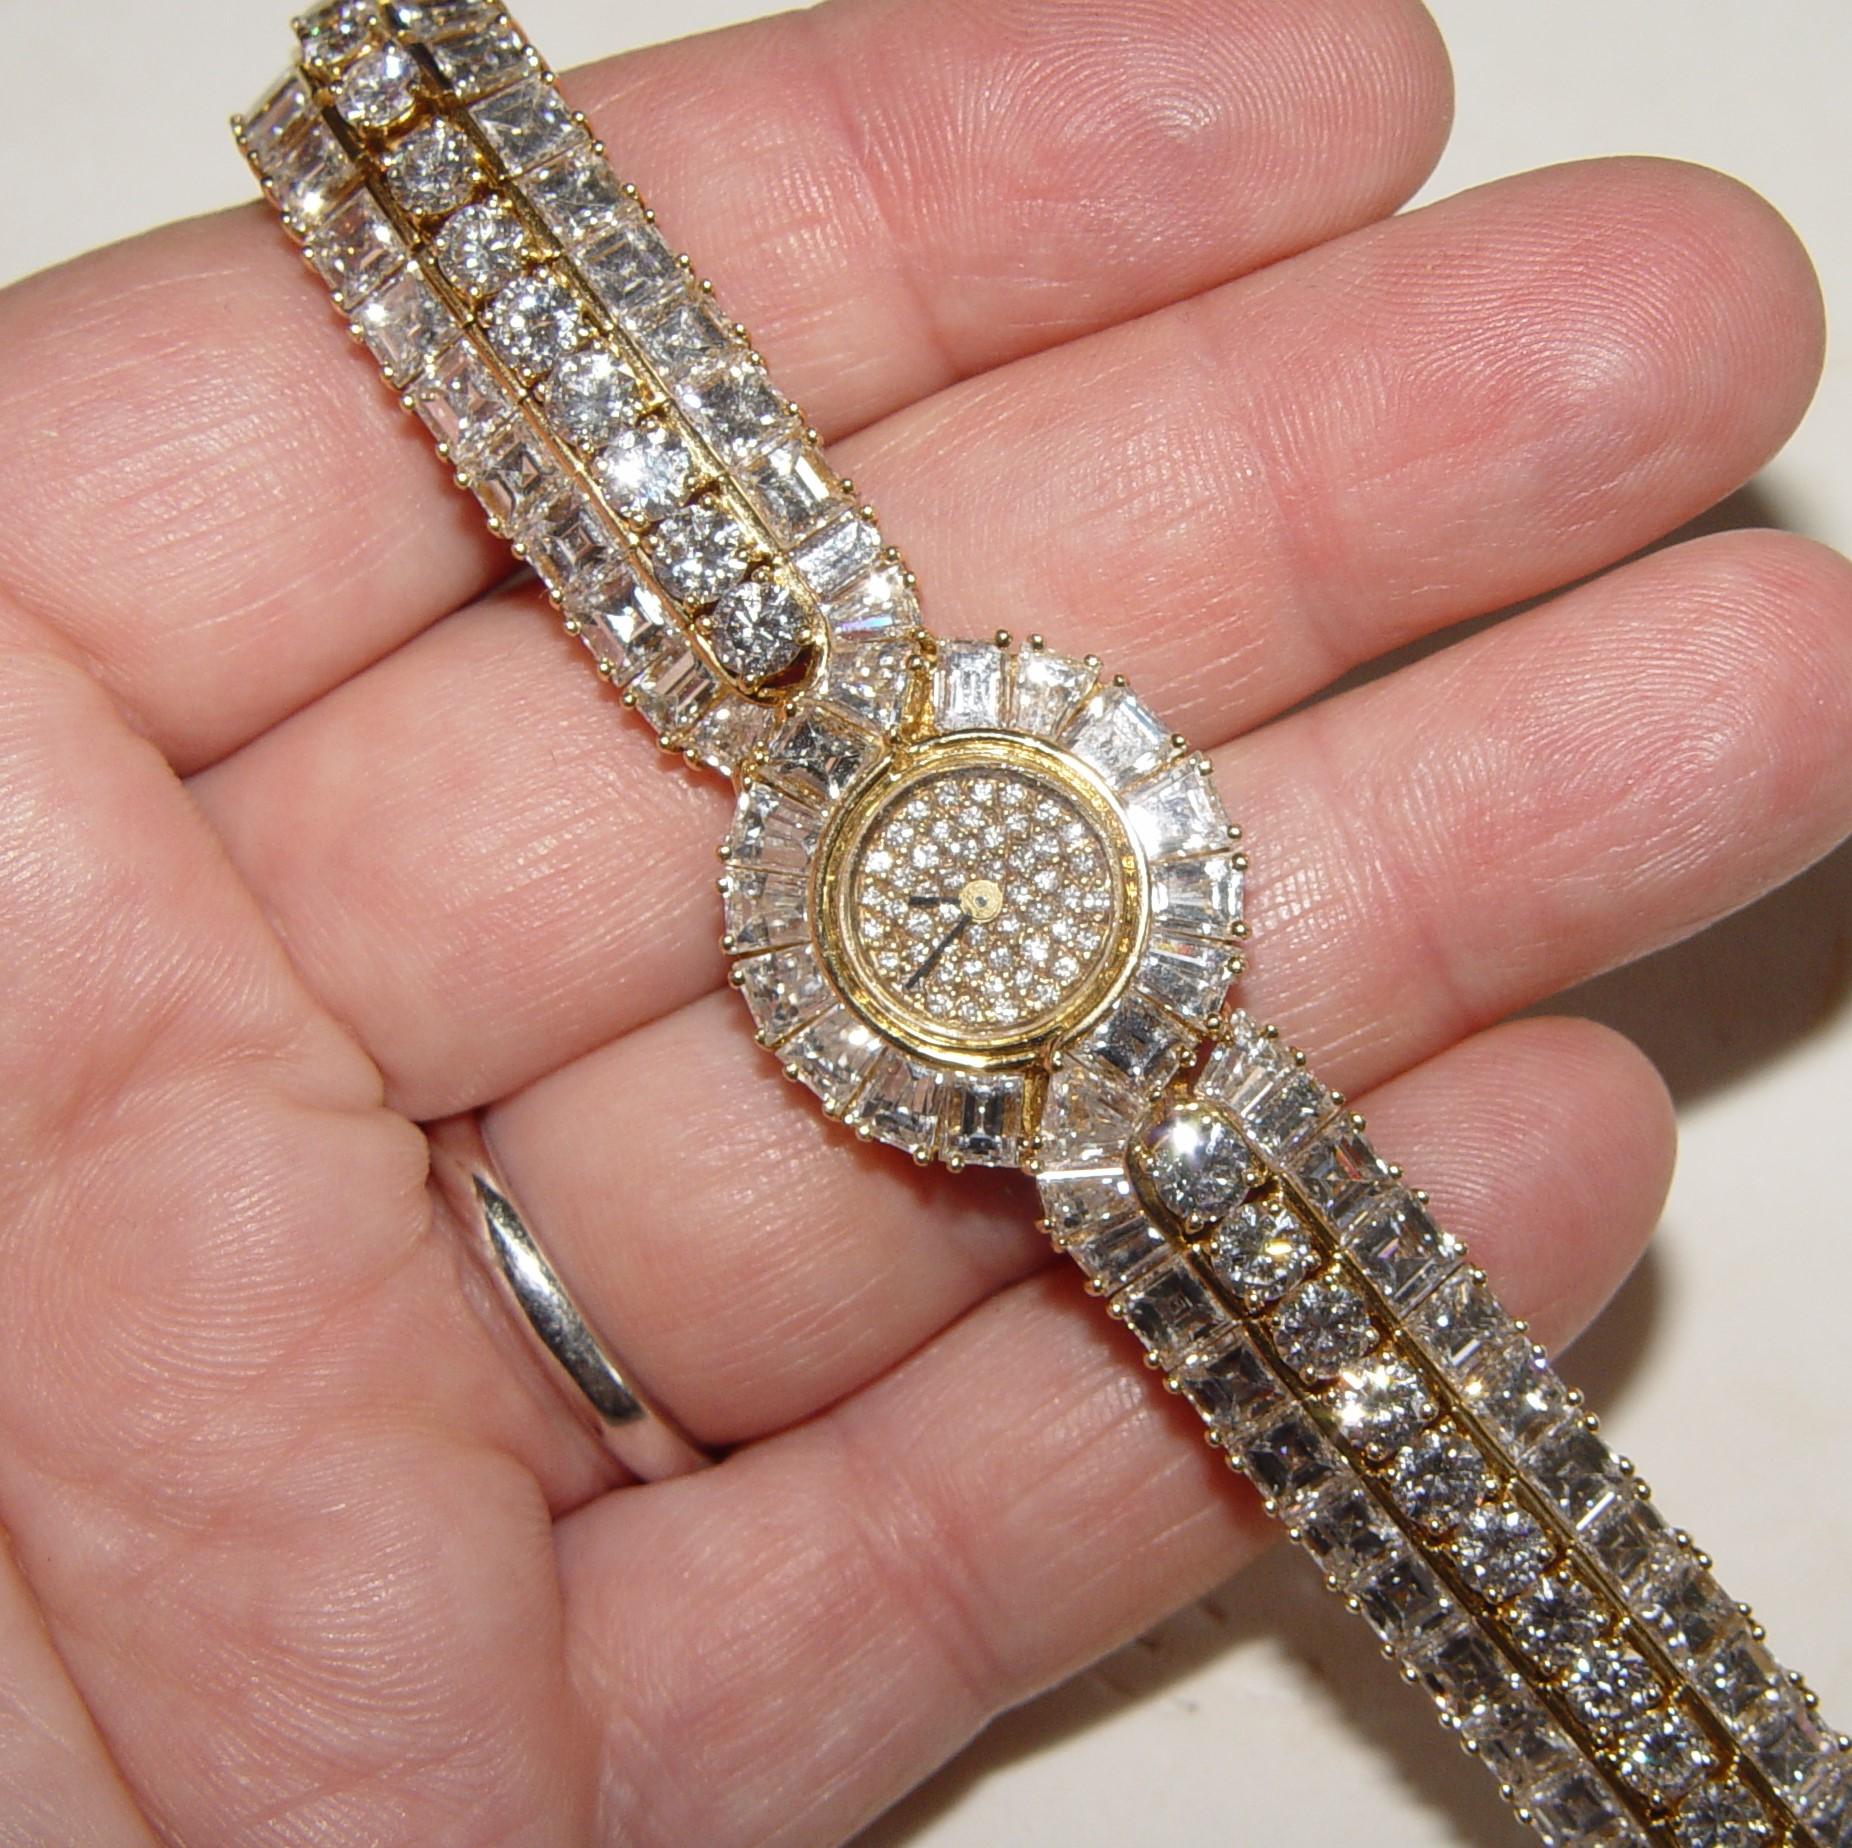 Magnifique montre de dame sertie de diamants de qualité Collectional de taille Brilliante ronde et Ascher - bien assortis en couleur et clarté. Selon nos calculs, cette montre contient environ 20-25 carats de diamants (couleur D-E-F et pureté VS).